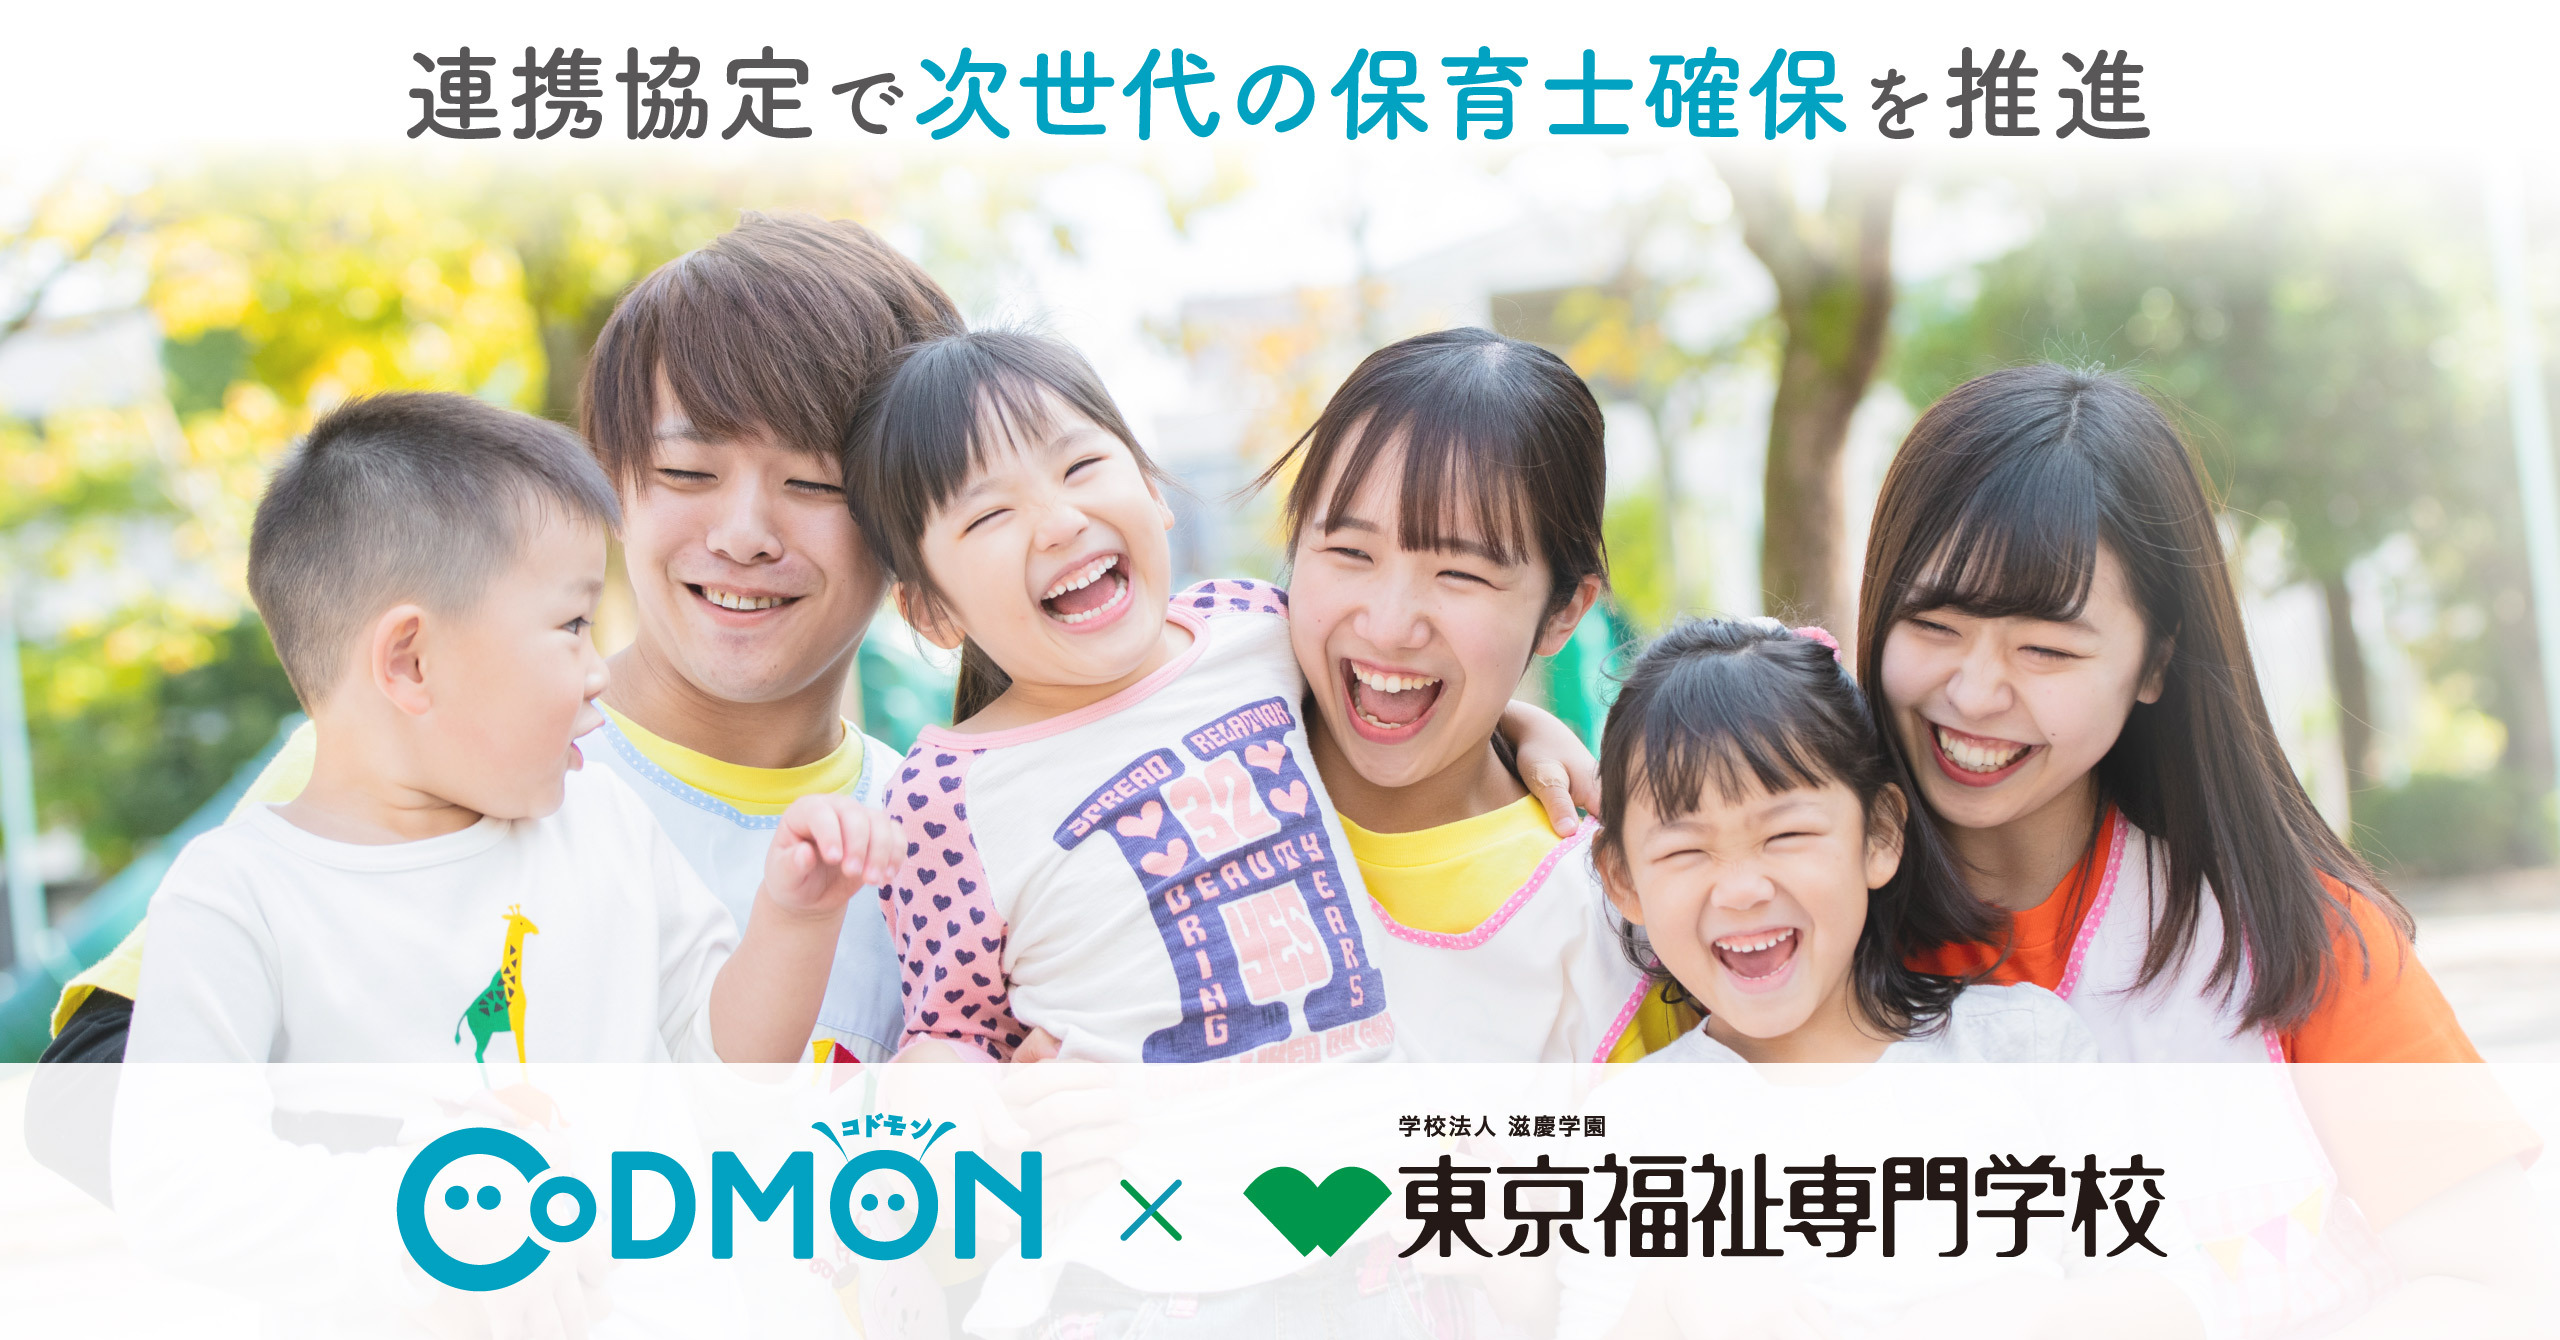 コドモン、東京福祉専門学校との包括連携協定で 次世代の保育士確保を推進へ